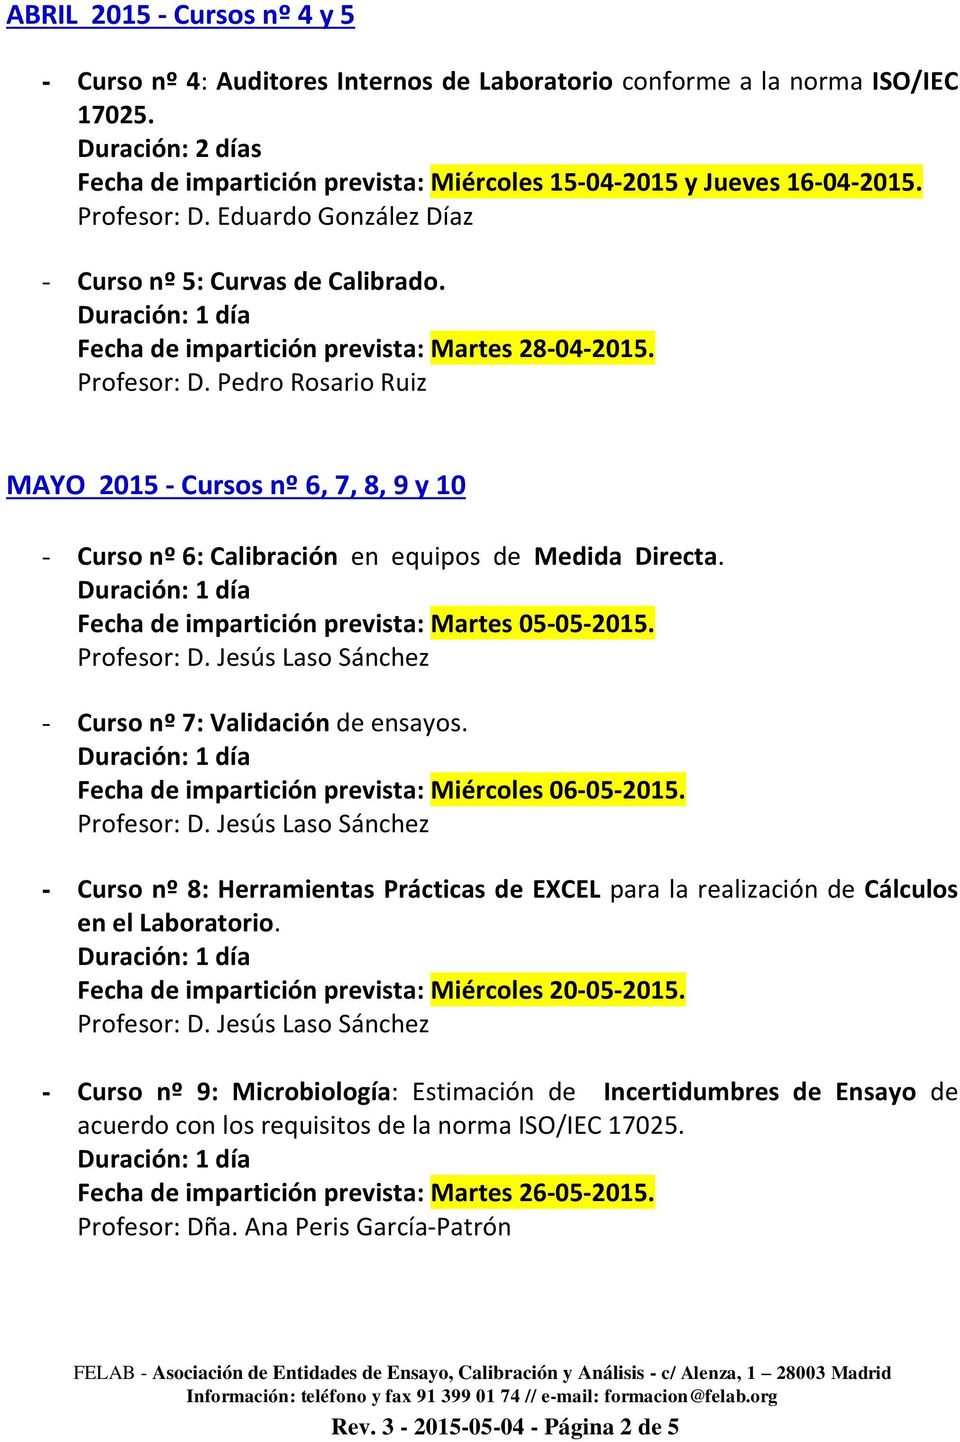 Pedro Rosario Ruiz MAYO 2015 - Cursos nº 6, 7, 8, 9 y 10 - Curso nº 6: Calibración en equipos de Medida Directa. Fecha de impartición prevista: Martes 05-05-2015. - Curso nº 7: Validación de ensayos.